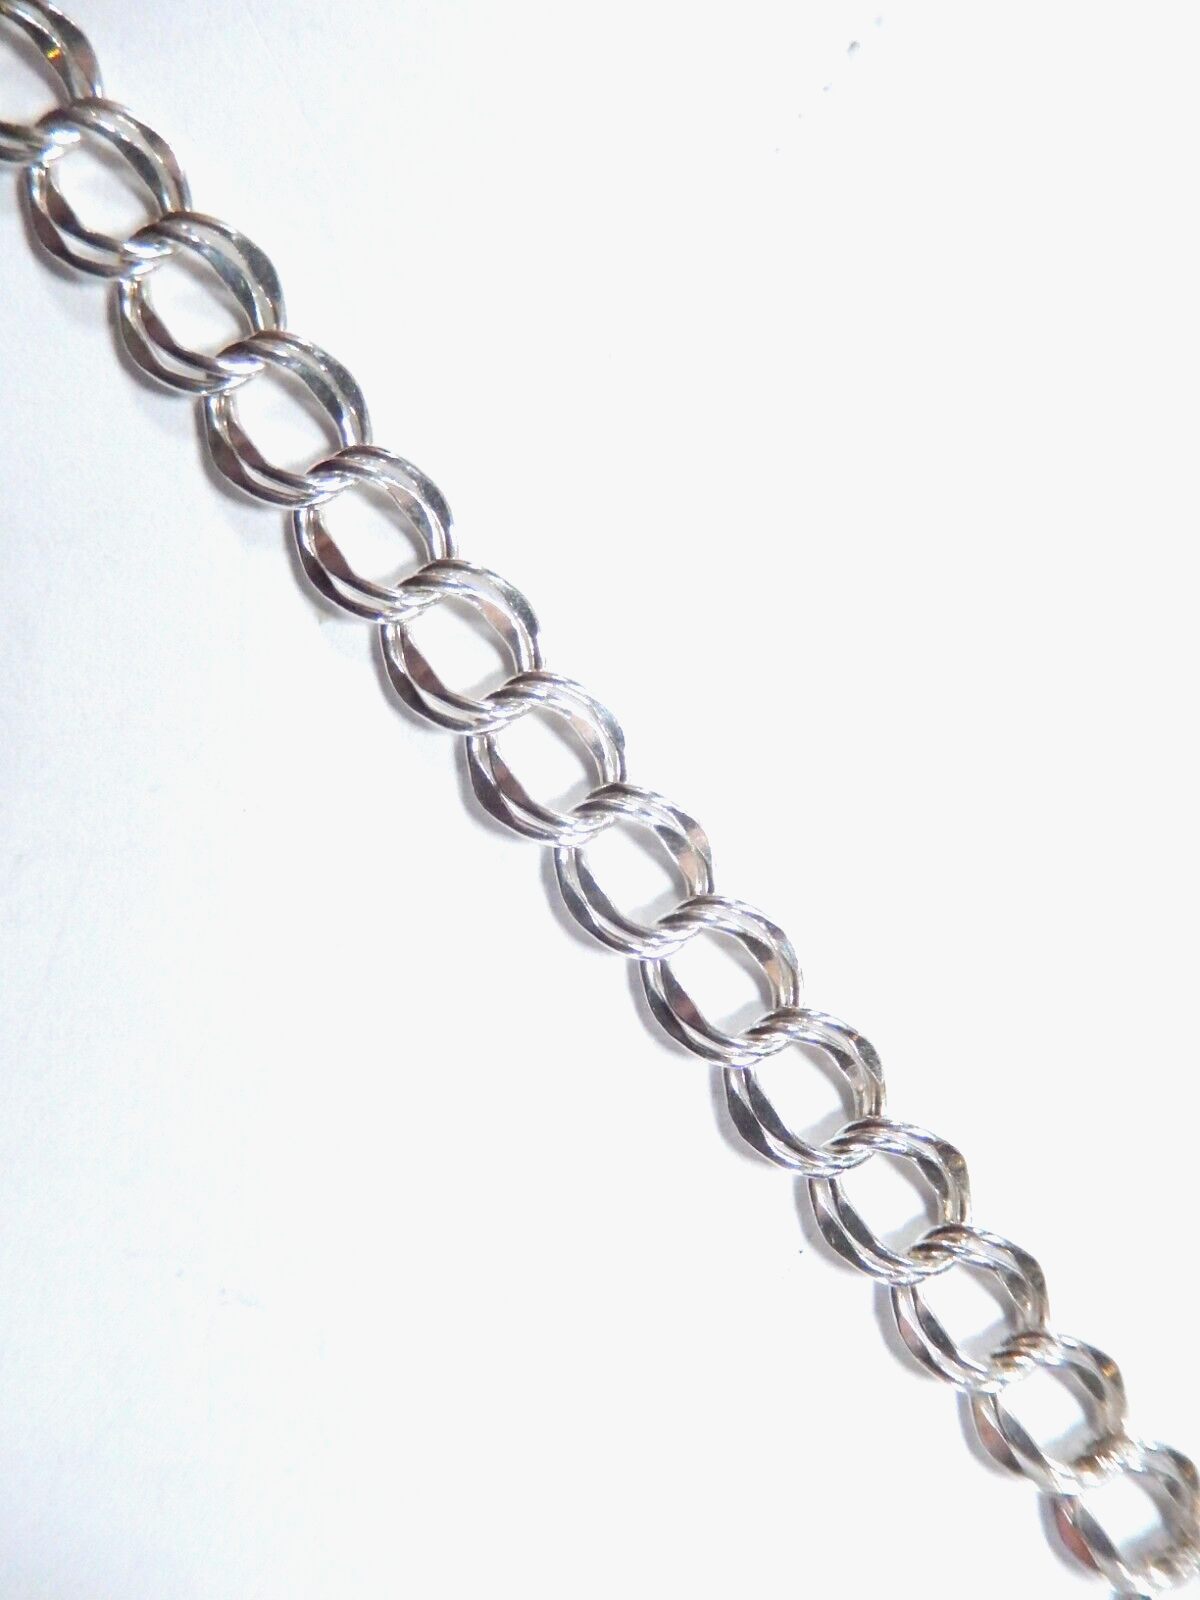 *VINTAGE** Sterling Silver Double Link Charm Bracelet - 7"